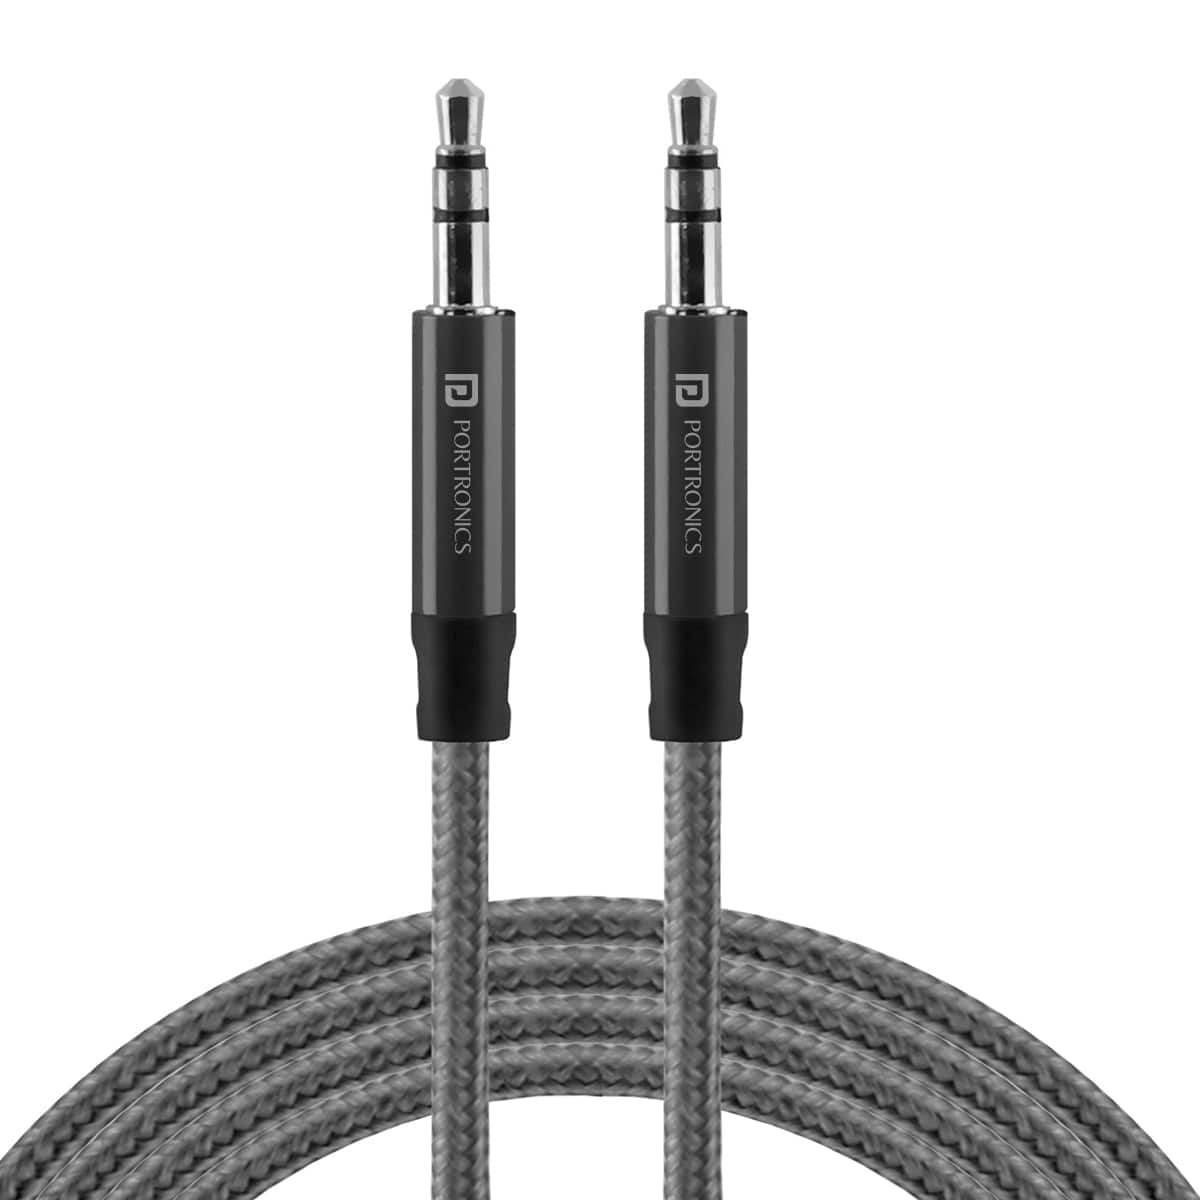 PORTRONICS-Konnect Aux 5 High Quality 3.5mm Aux Cable